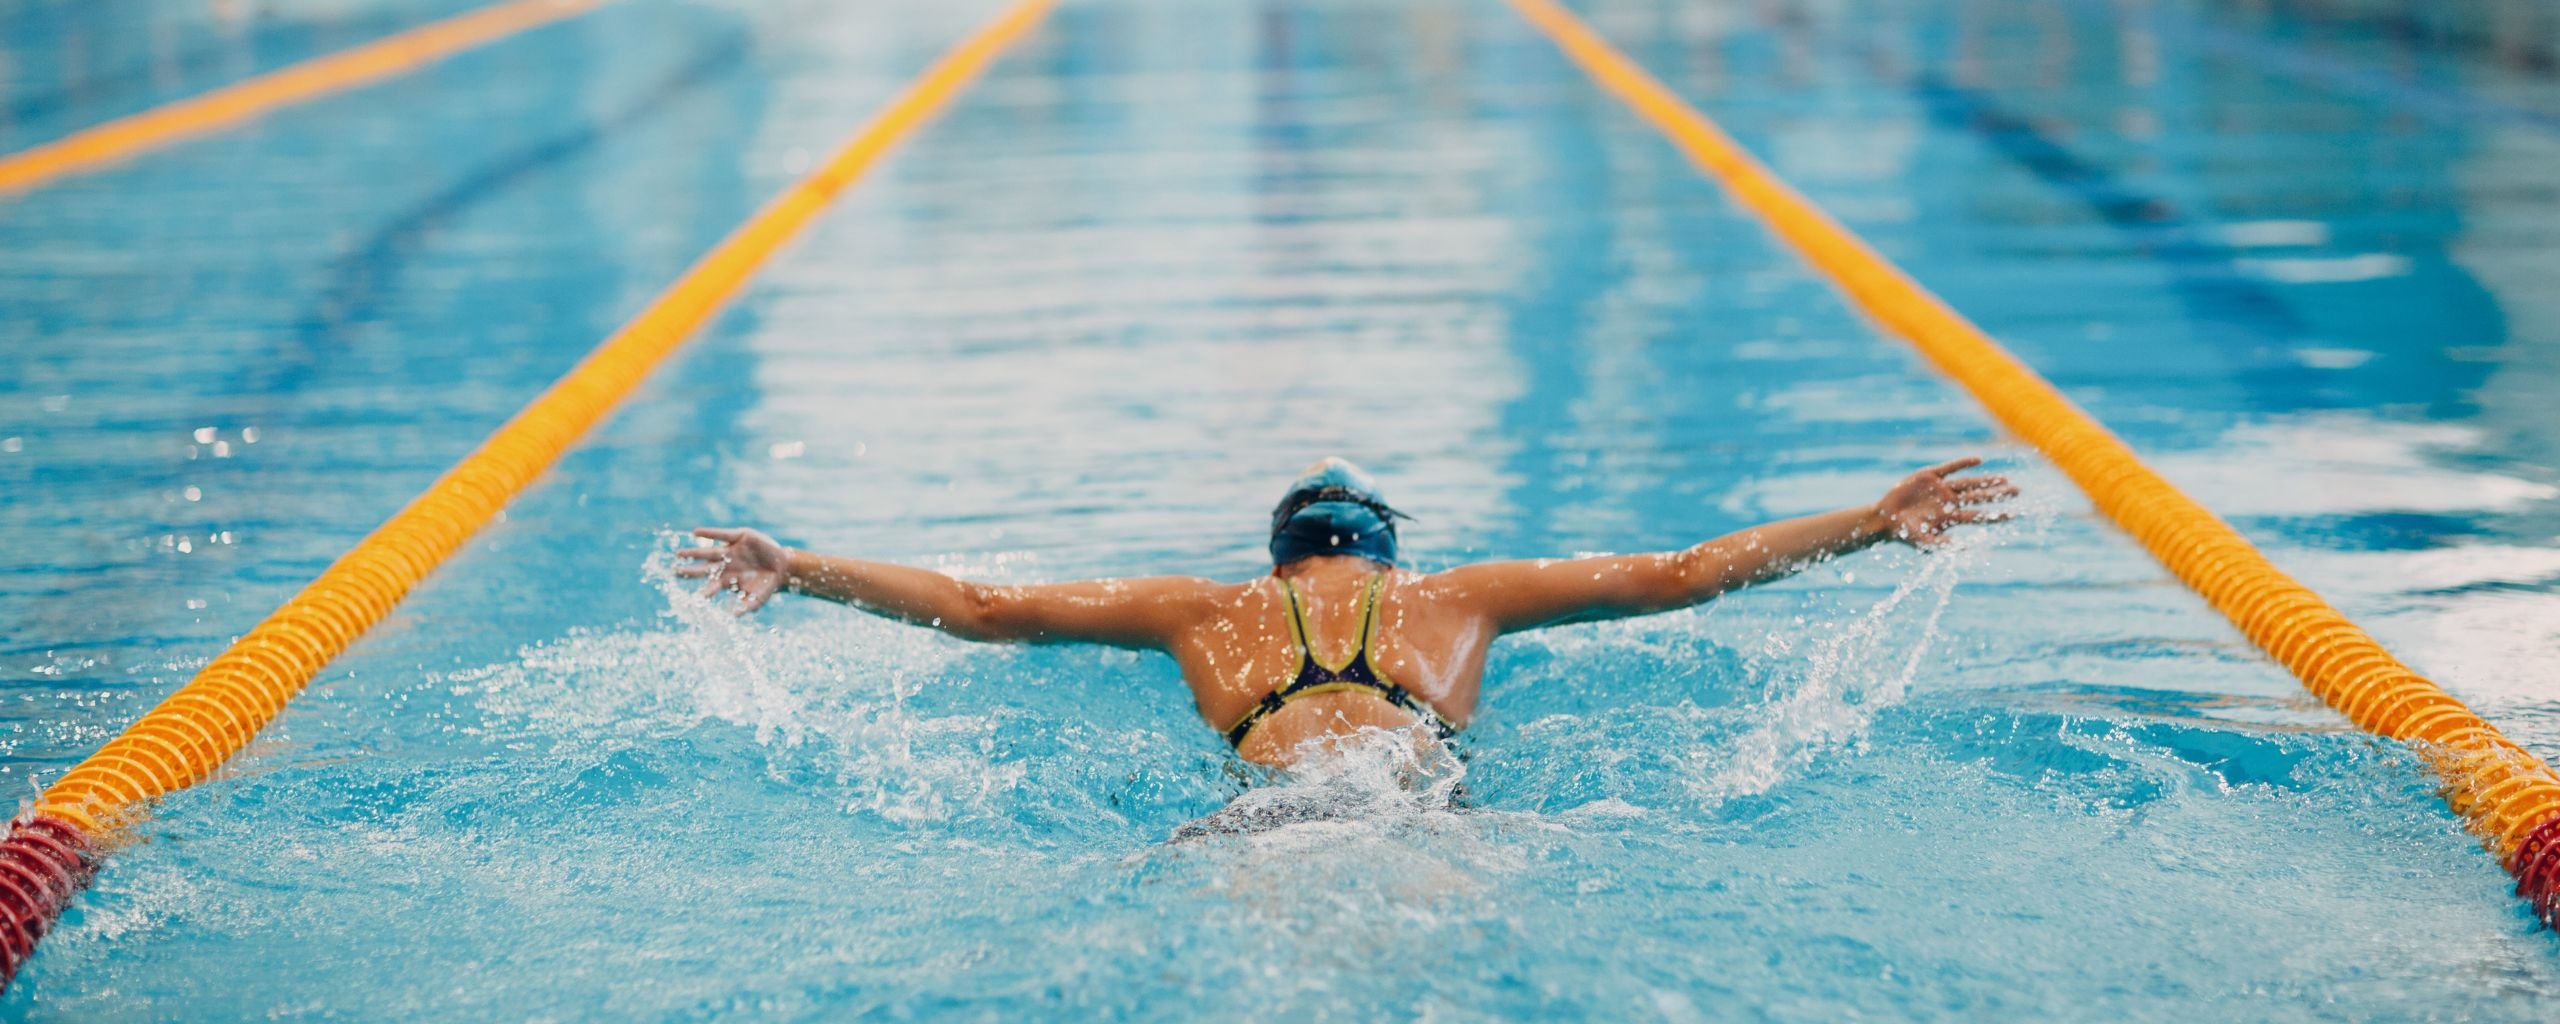 Een vrouwelijk persoon die aan het zwemmen is, ze doet de vlinderslag.